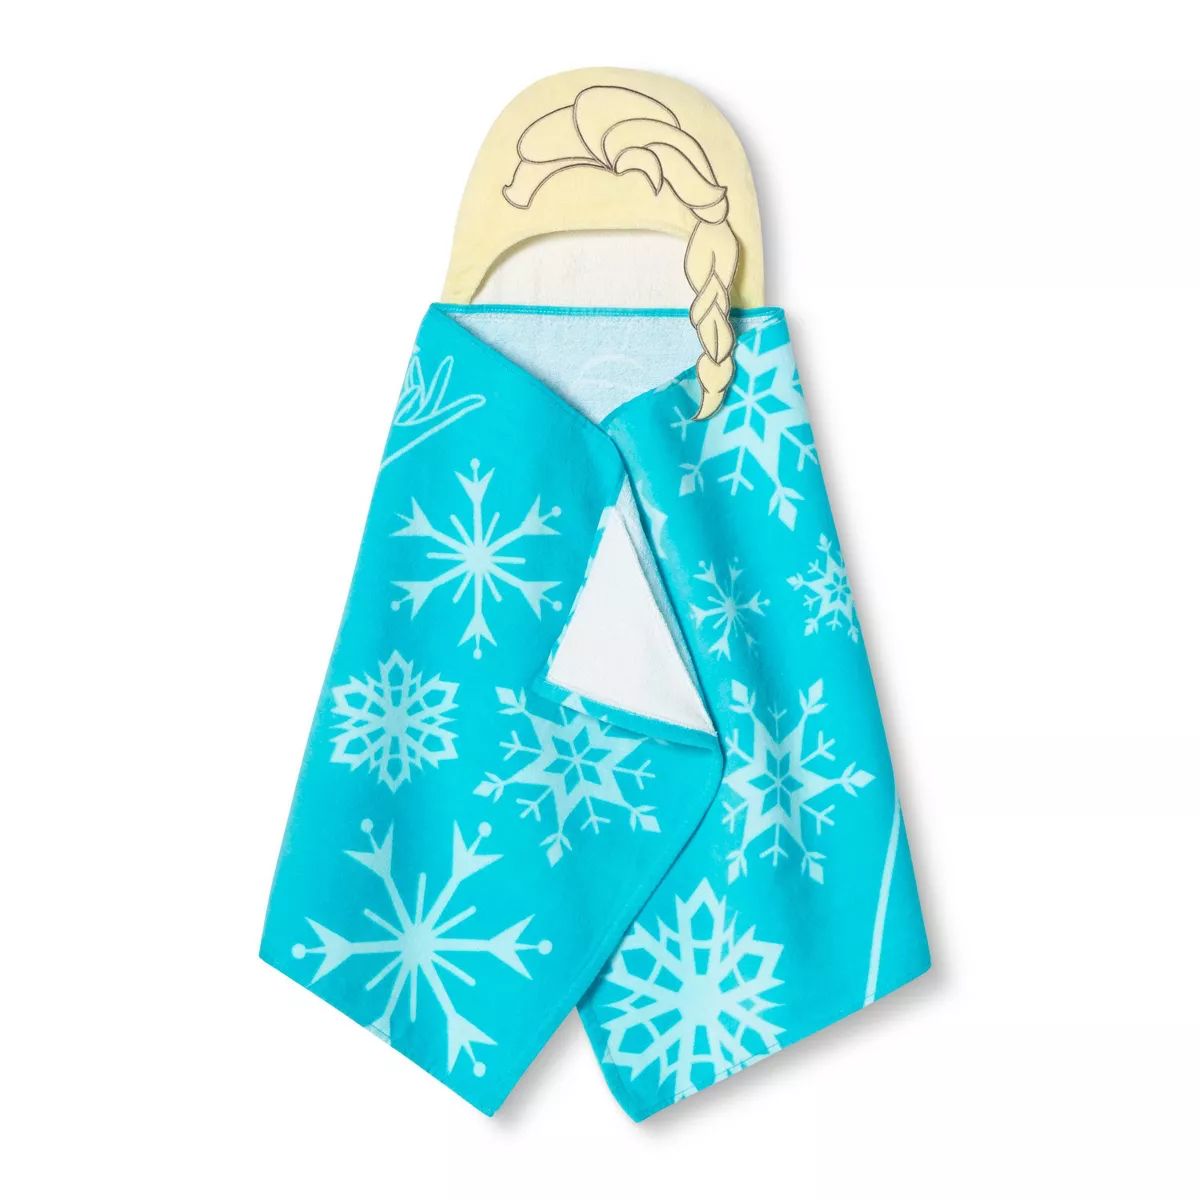 Frozen Elsa Kids' Hooded Bath Towel Blue | Target